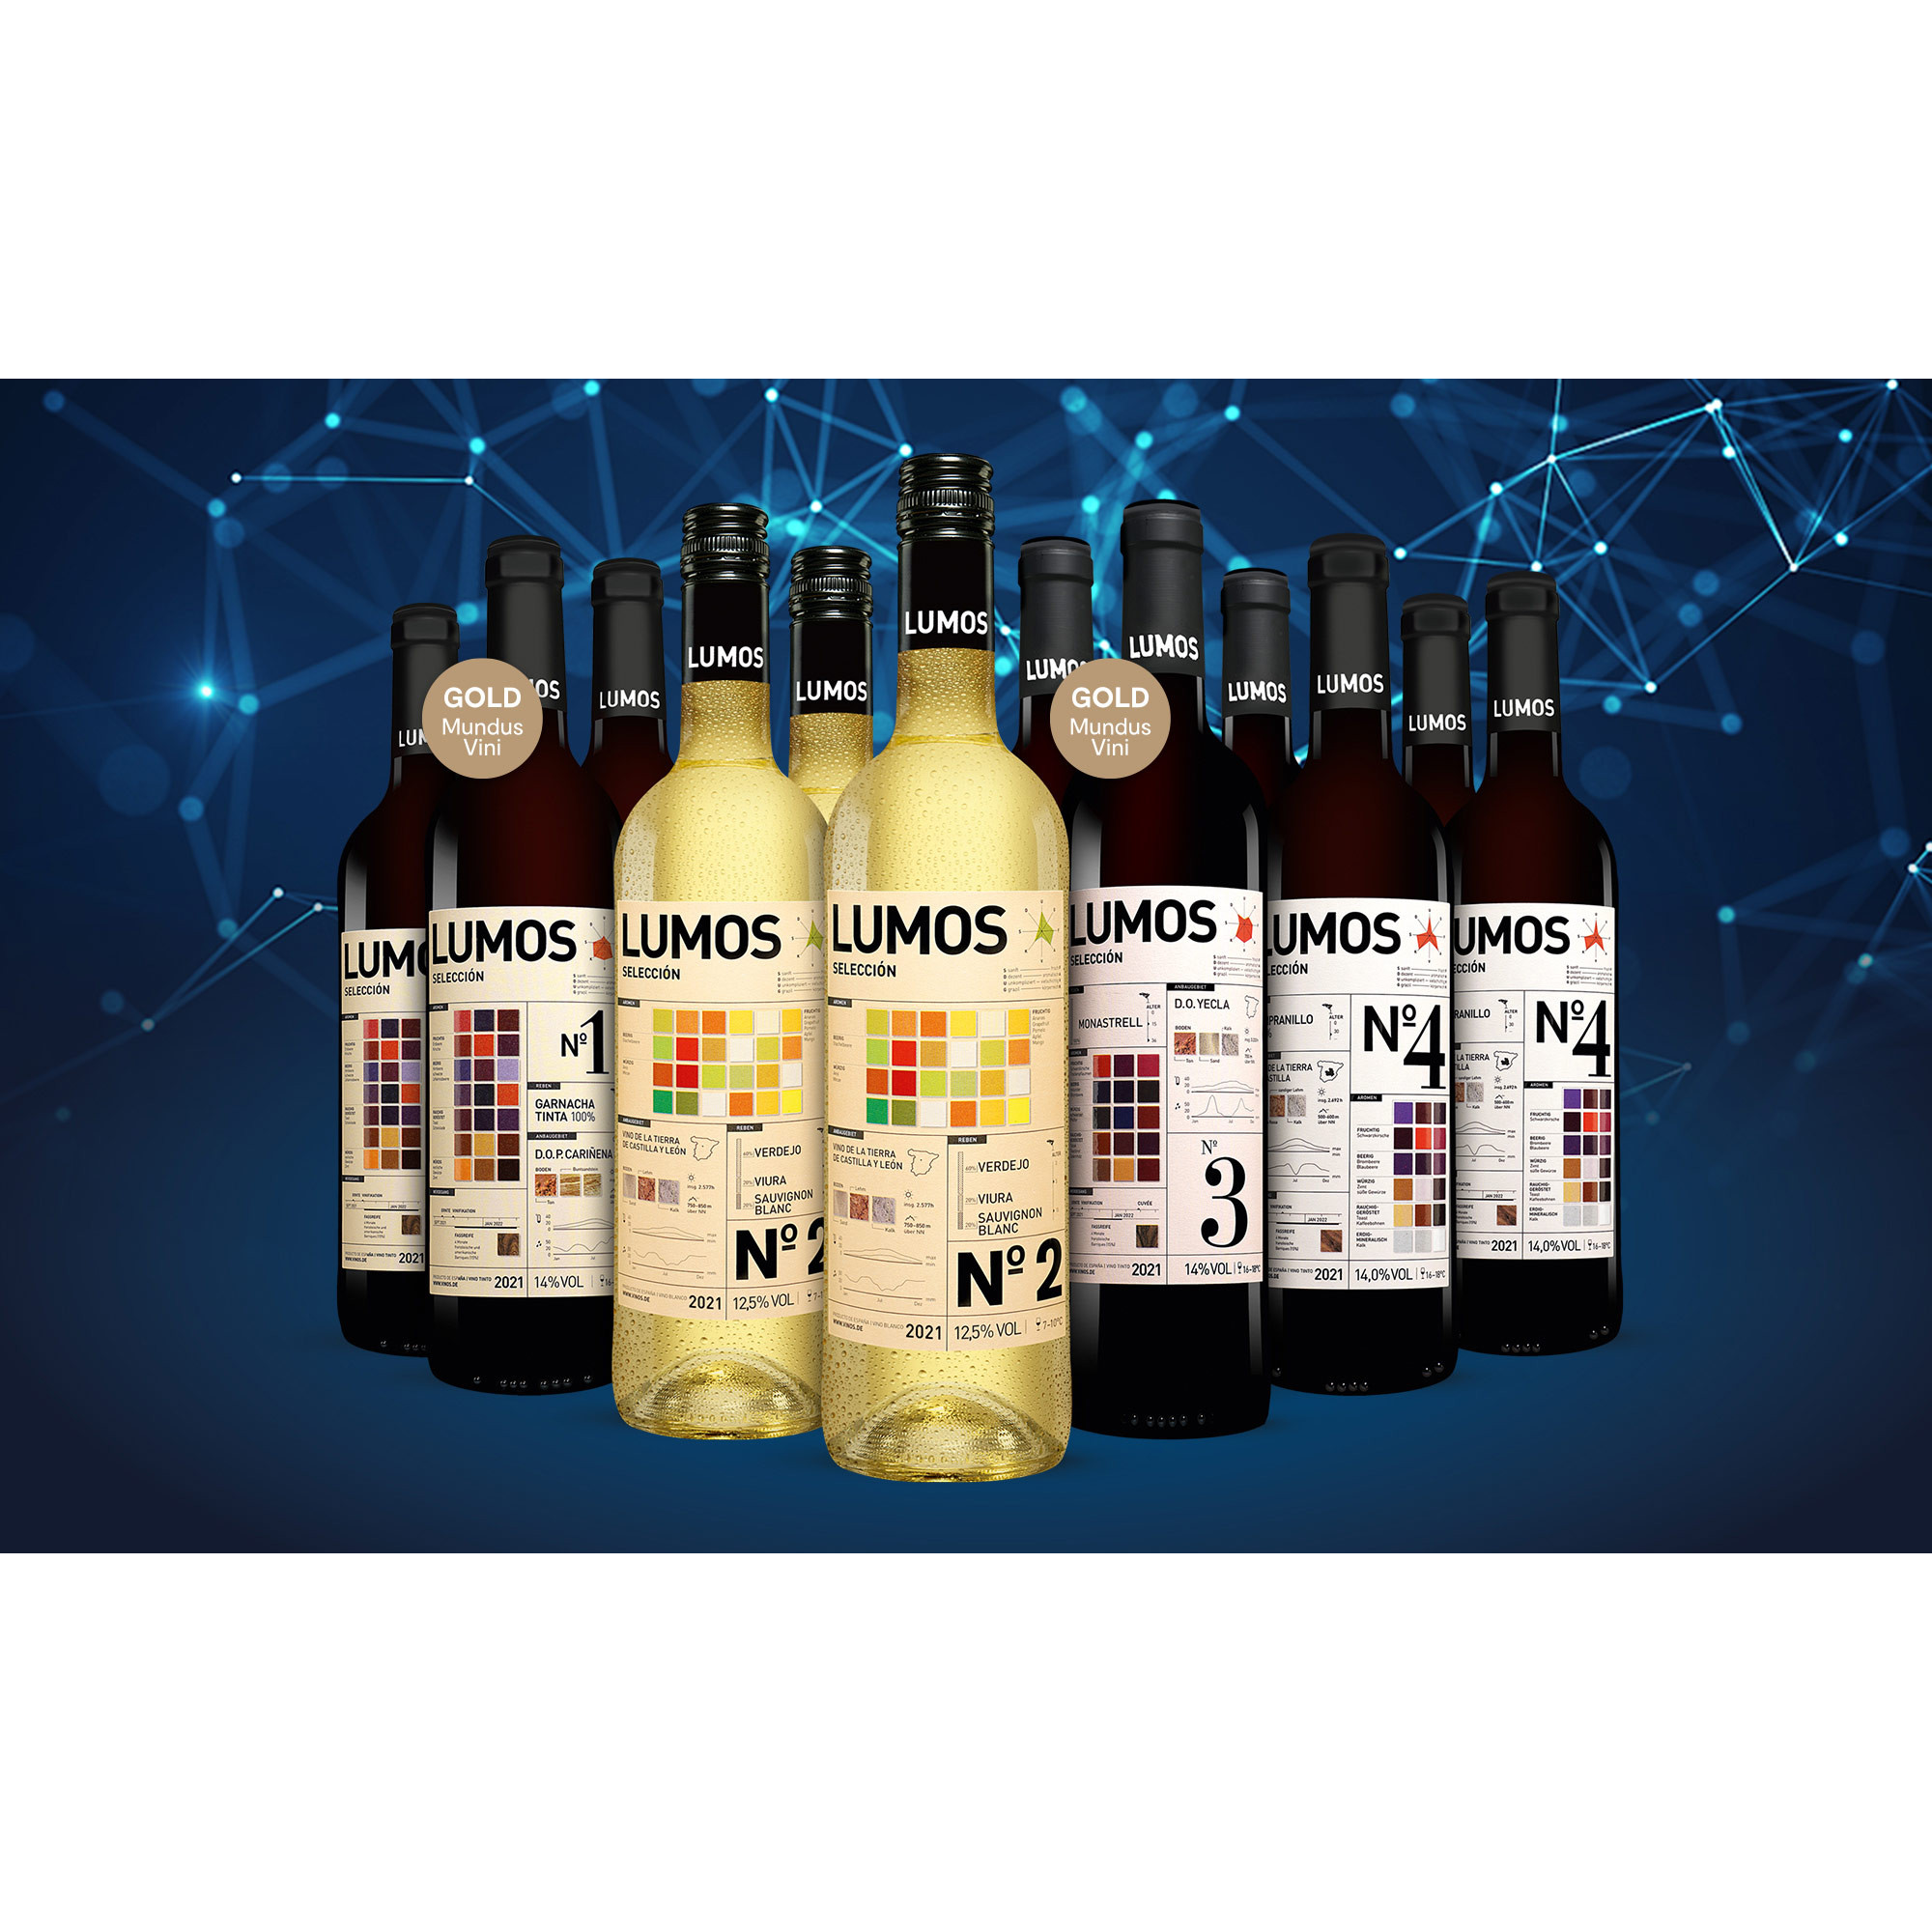 Lumos Genießer-Paket  9L Weinpaket aus Spanien 34954 vinos DE